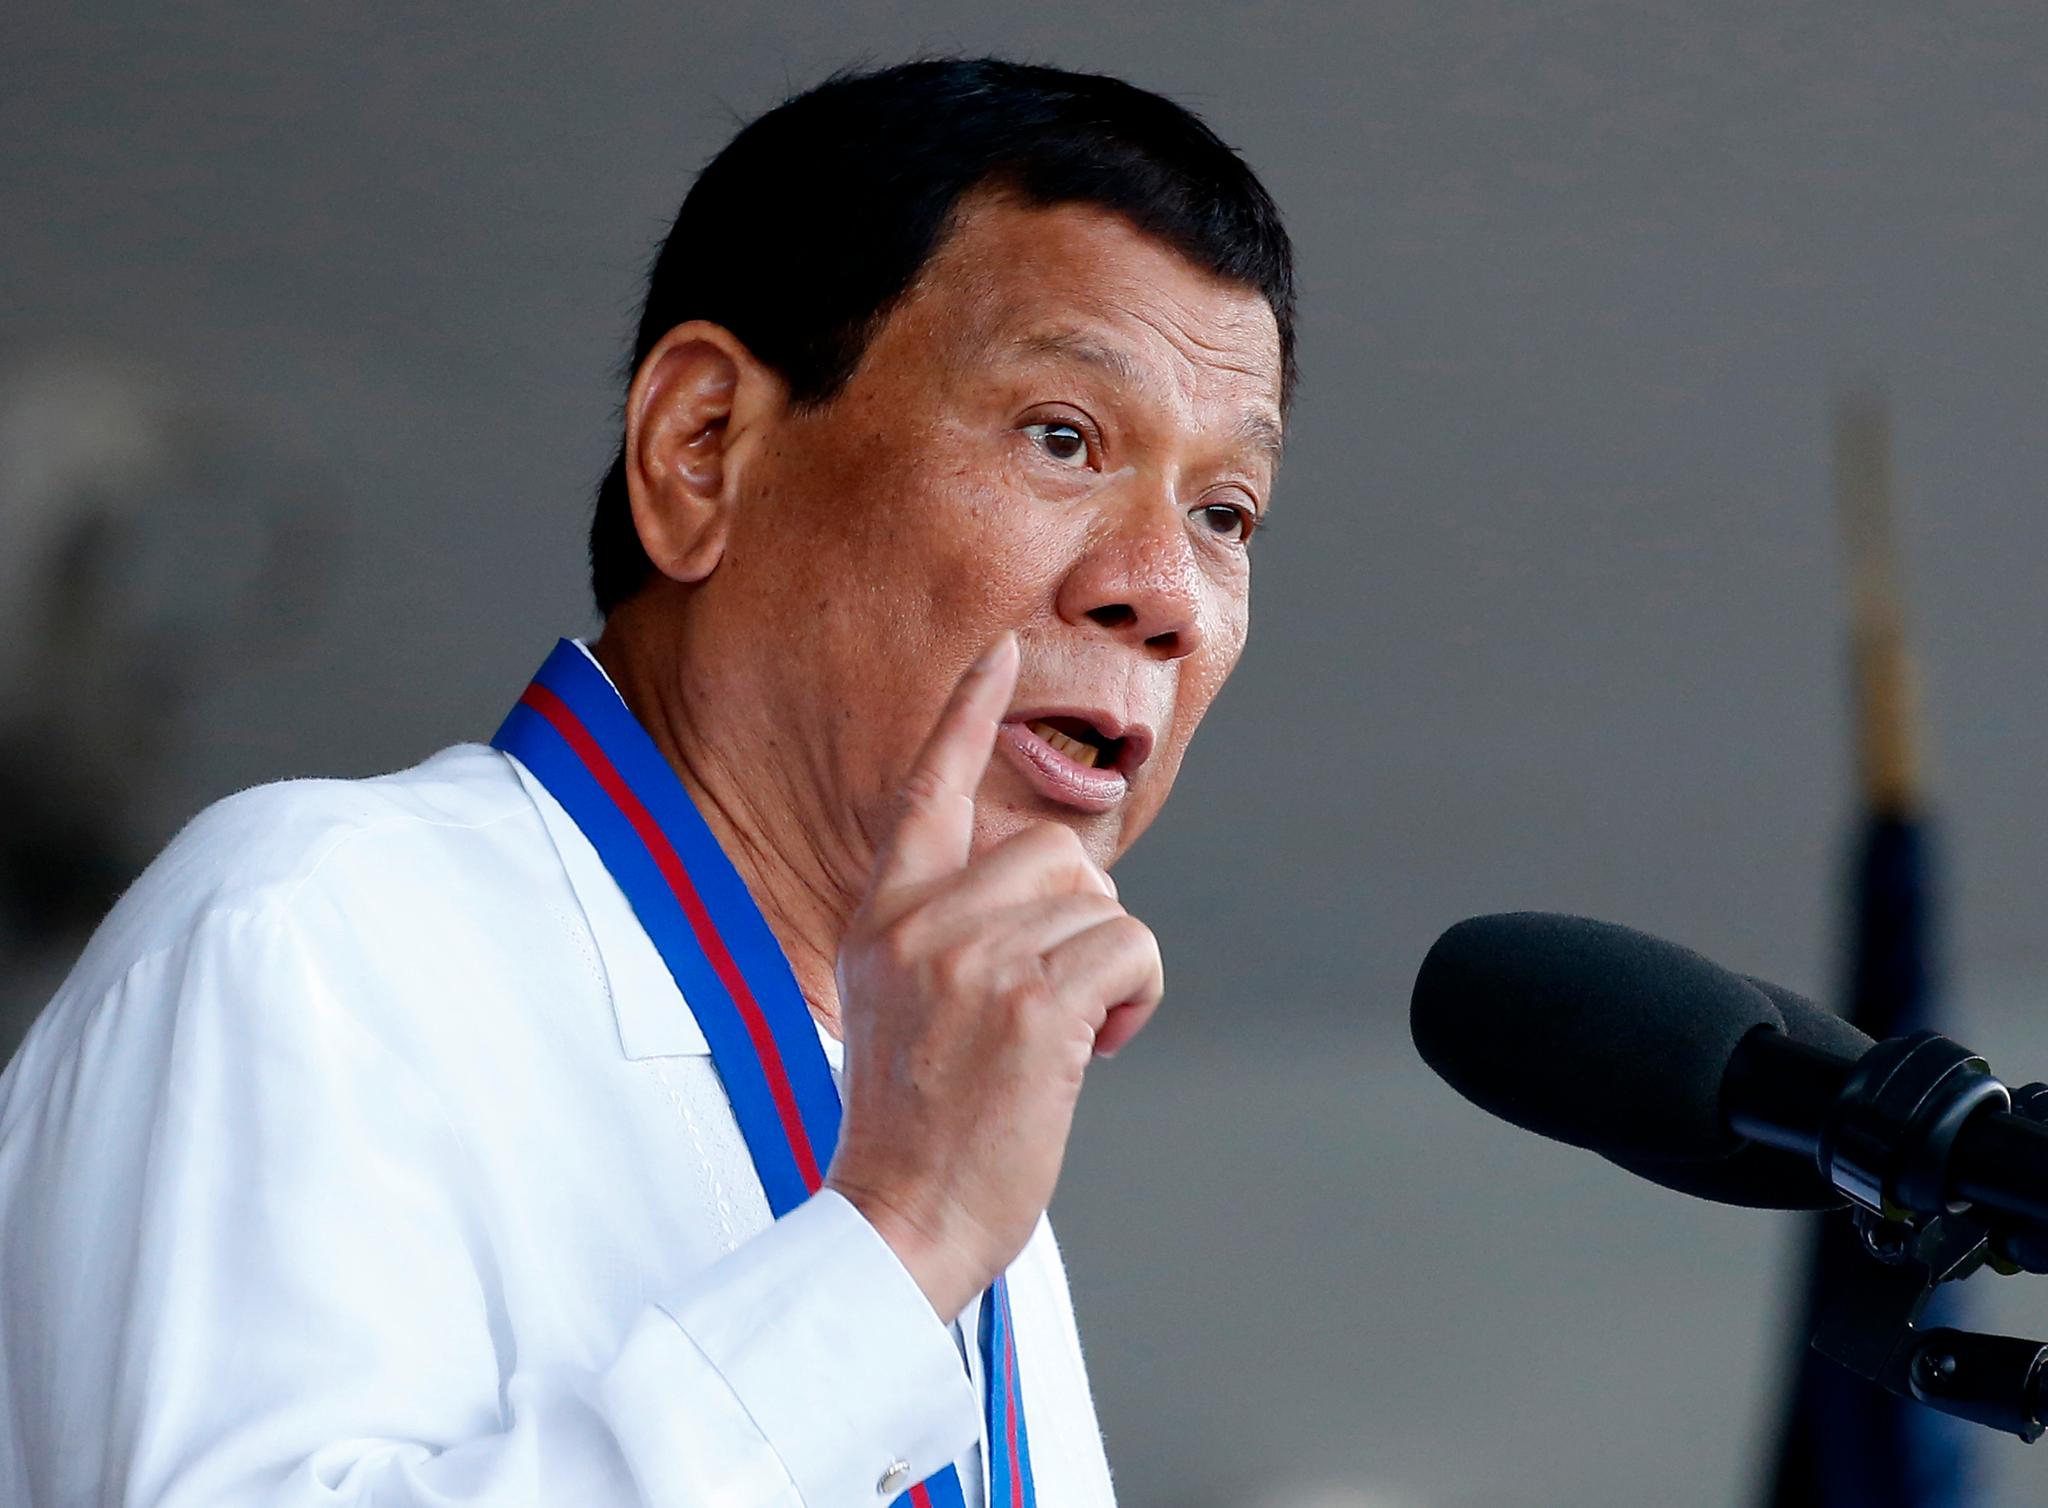 President Rodrigo Duterte hevder å ha kurert seg selv for homofili. Foto: Bullit Marquez / AP / NTB scanpix